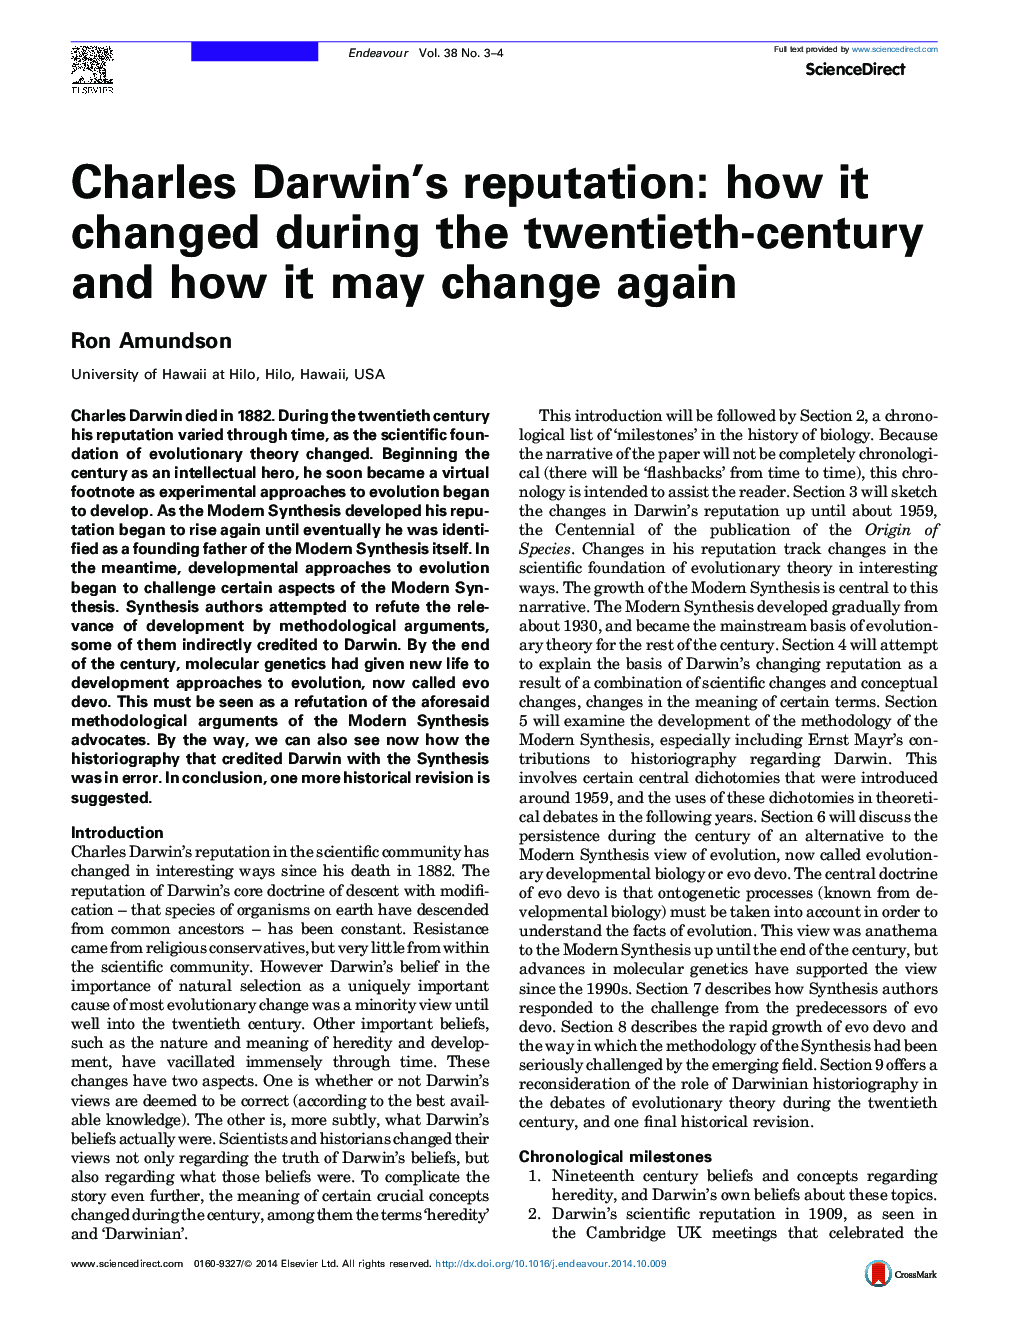 شهرت چارلز داروین: چگونه در طول قرن بیستم تغییر کرد و چگونه ممکن است دوباره تغییر کند 